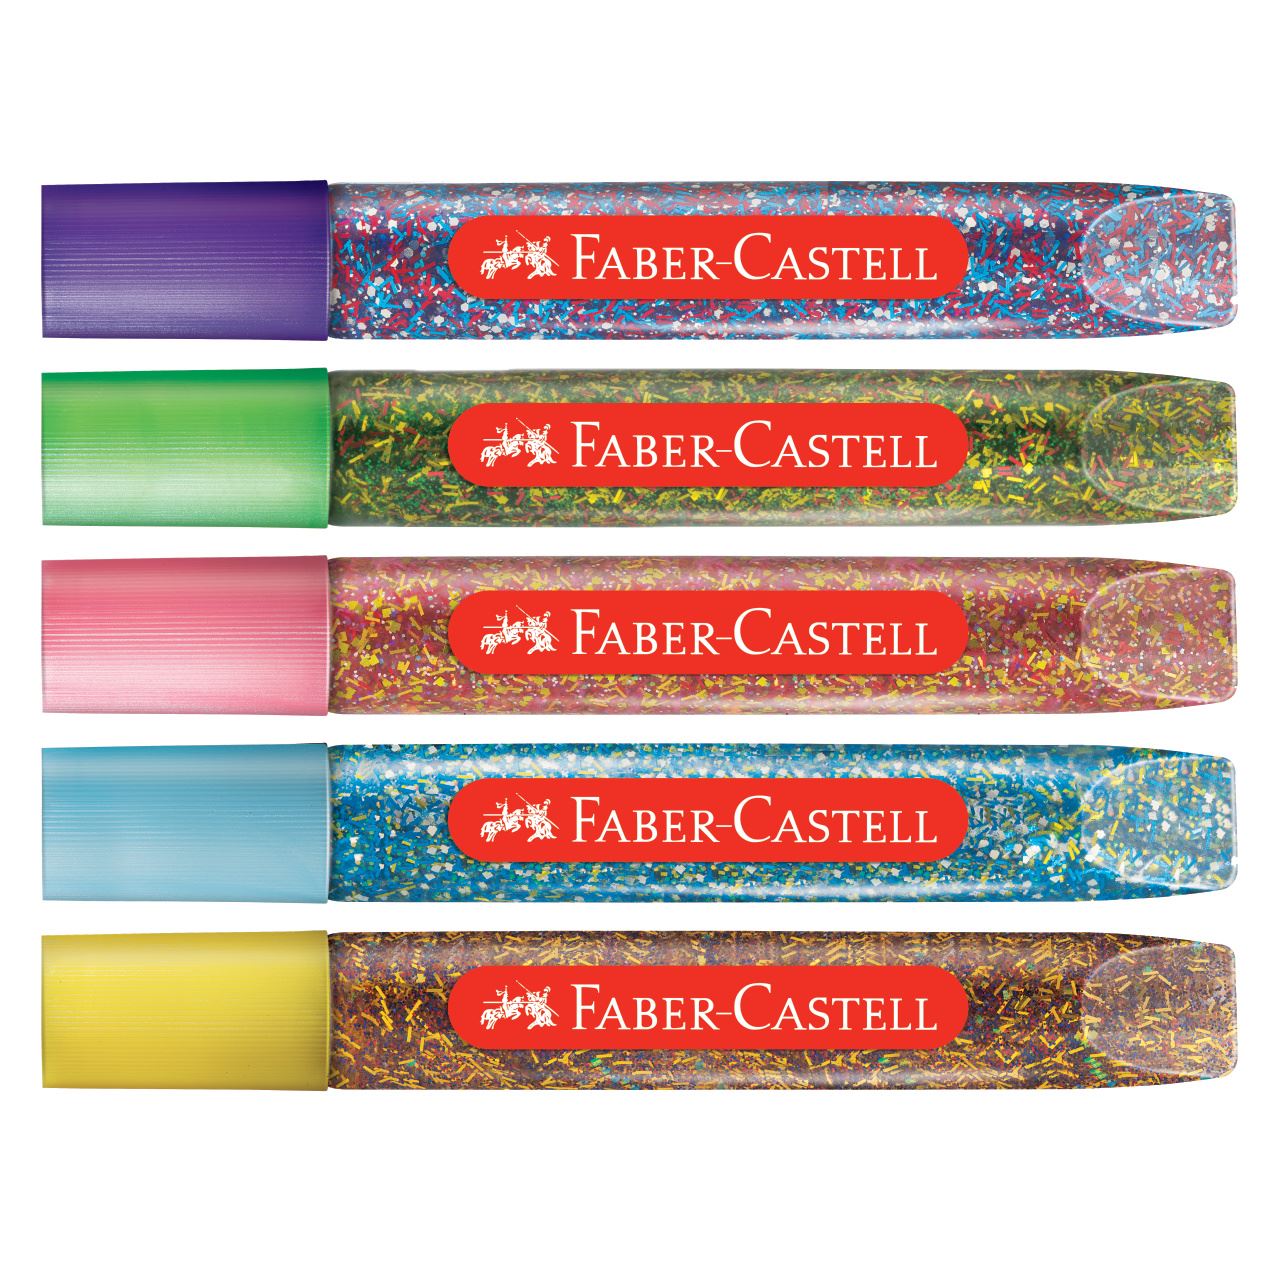 Faber-Castell - Cola Colorida c/ Glitter